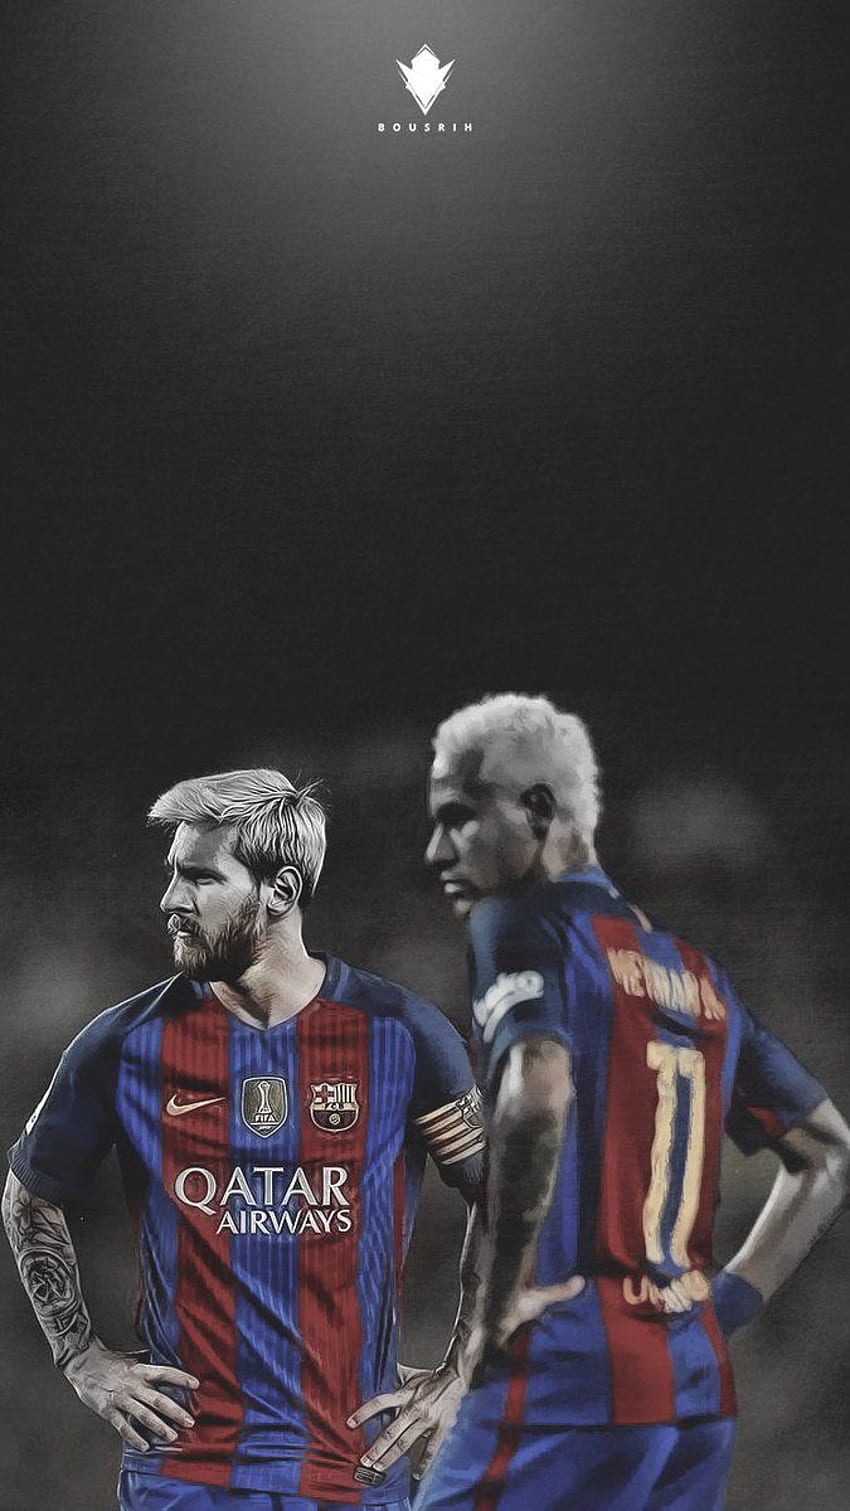 Với những bức ảnh của Messi, bạn sẽ cảm thấy như đang đi trên chính sân bóng của anh ấy. Các khoảnh khắc của anh ấy sẽ thôi thúc bạn đạt được mục tiêu của mình. Hãy cùng xem những bức ảnh này để tận hưởng niềm đam mê bóng đá.